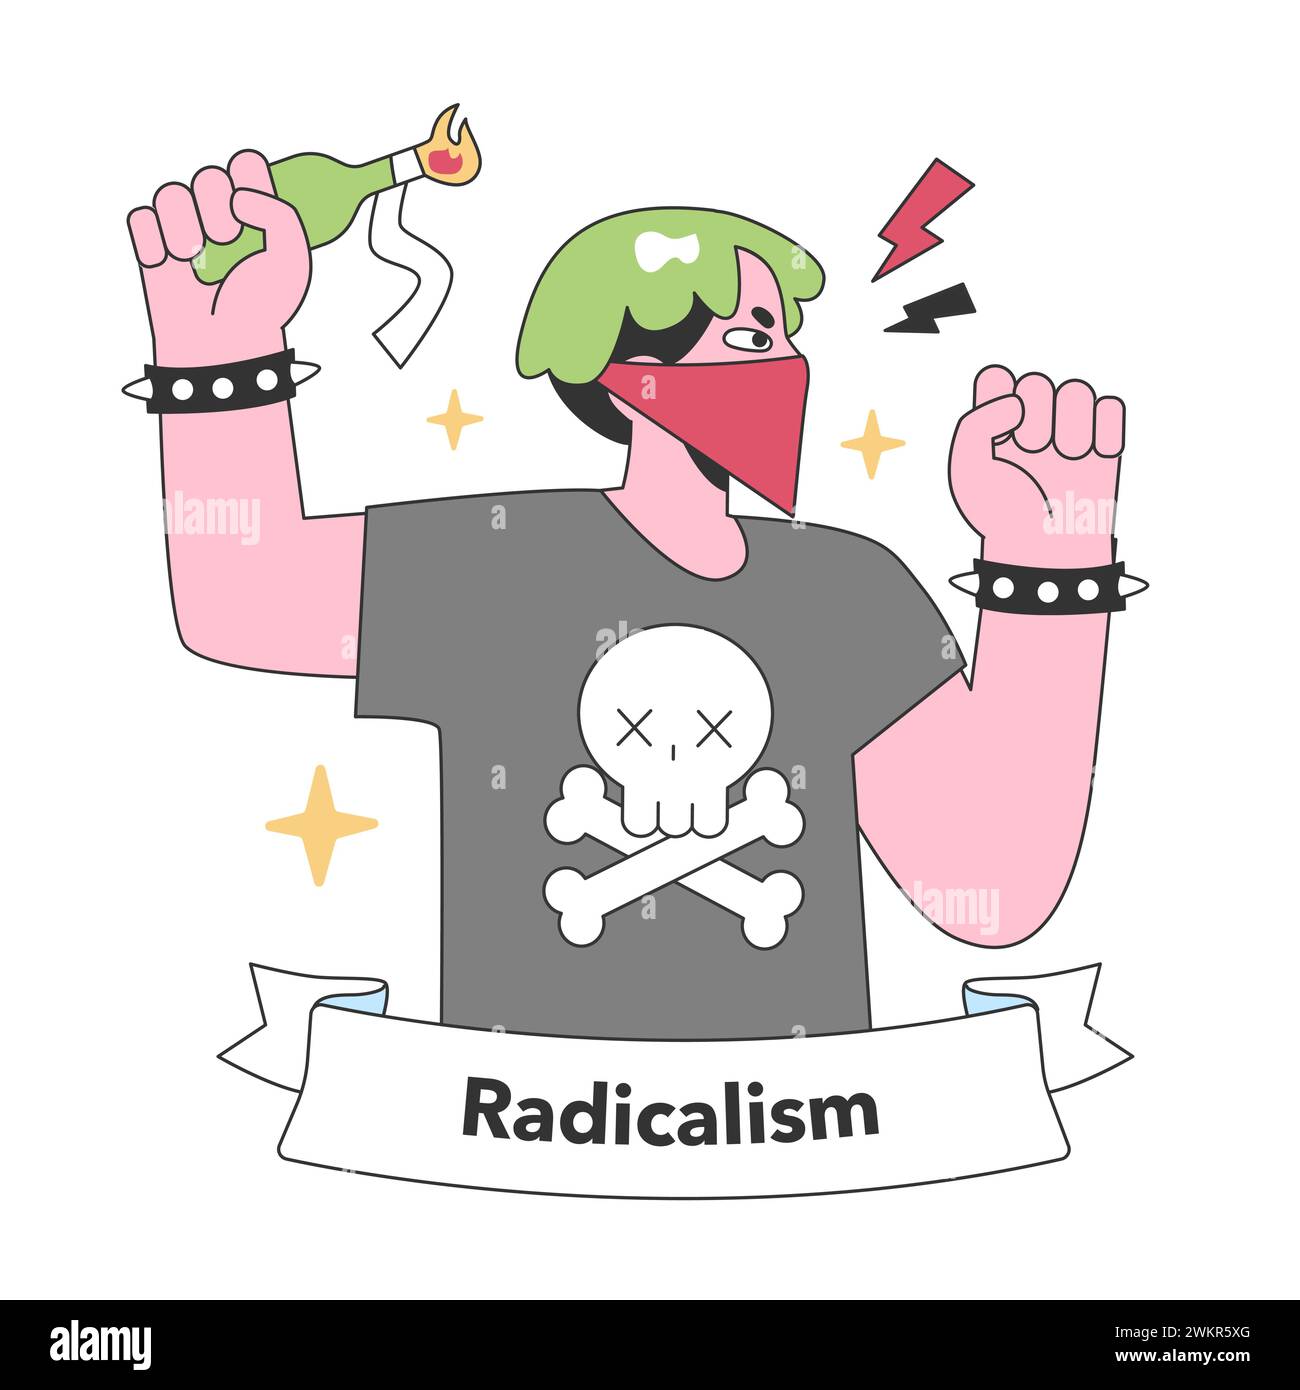 Radicalismo incarnato in una figura mascherata con un molotov rialzato, un simbolo forte di protesta e desiderio di cambiamento trasformativo. Illustrazione vettoriale piatta. Illustrazione Vettoriale